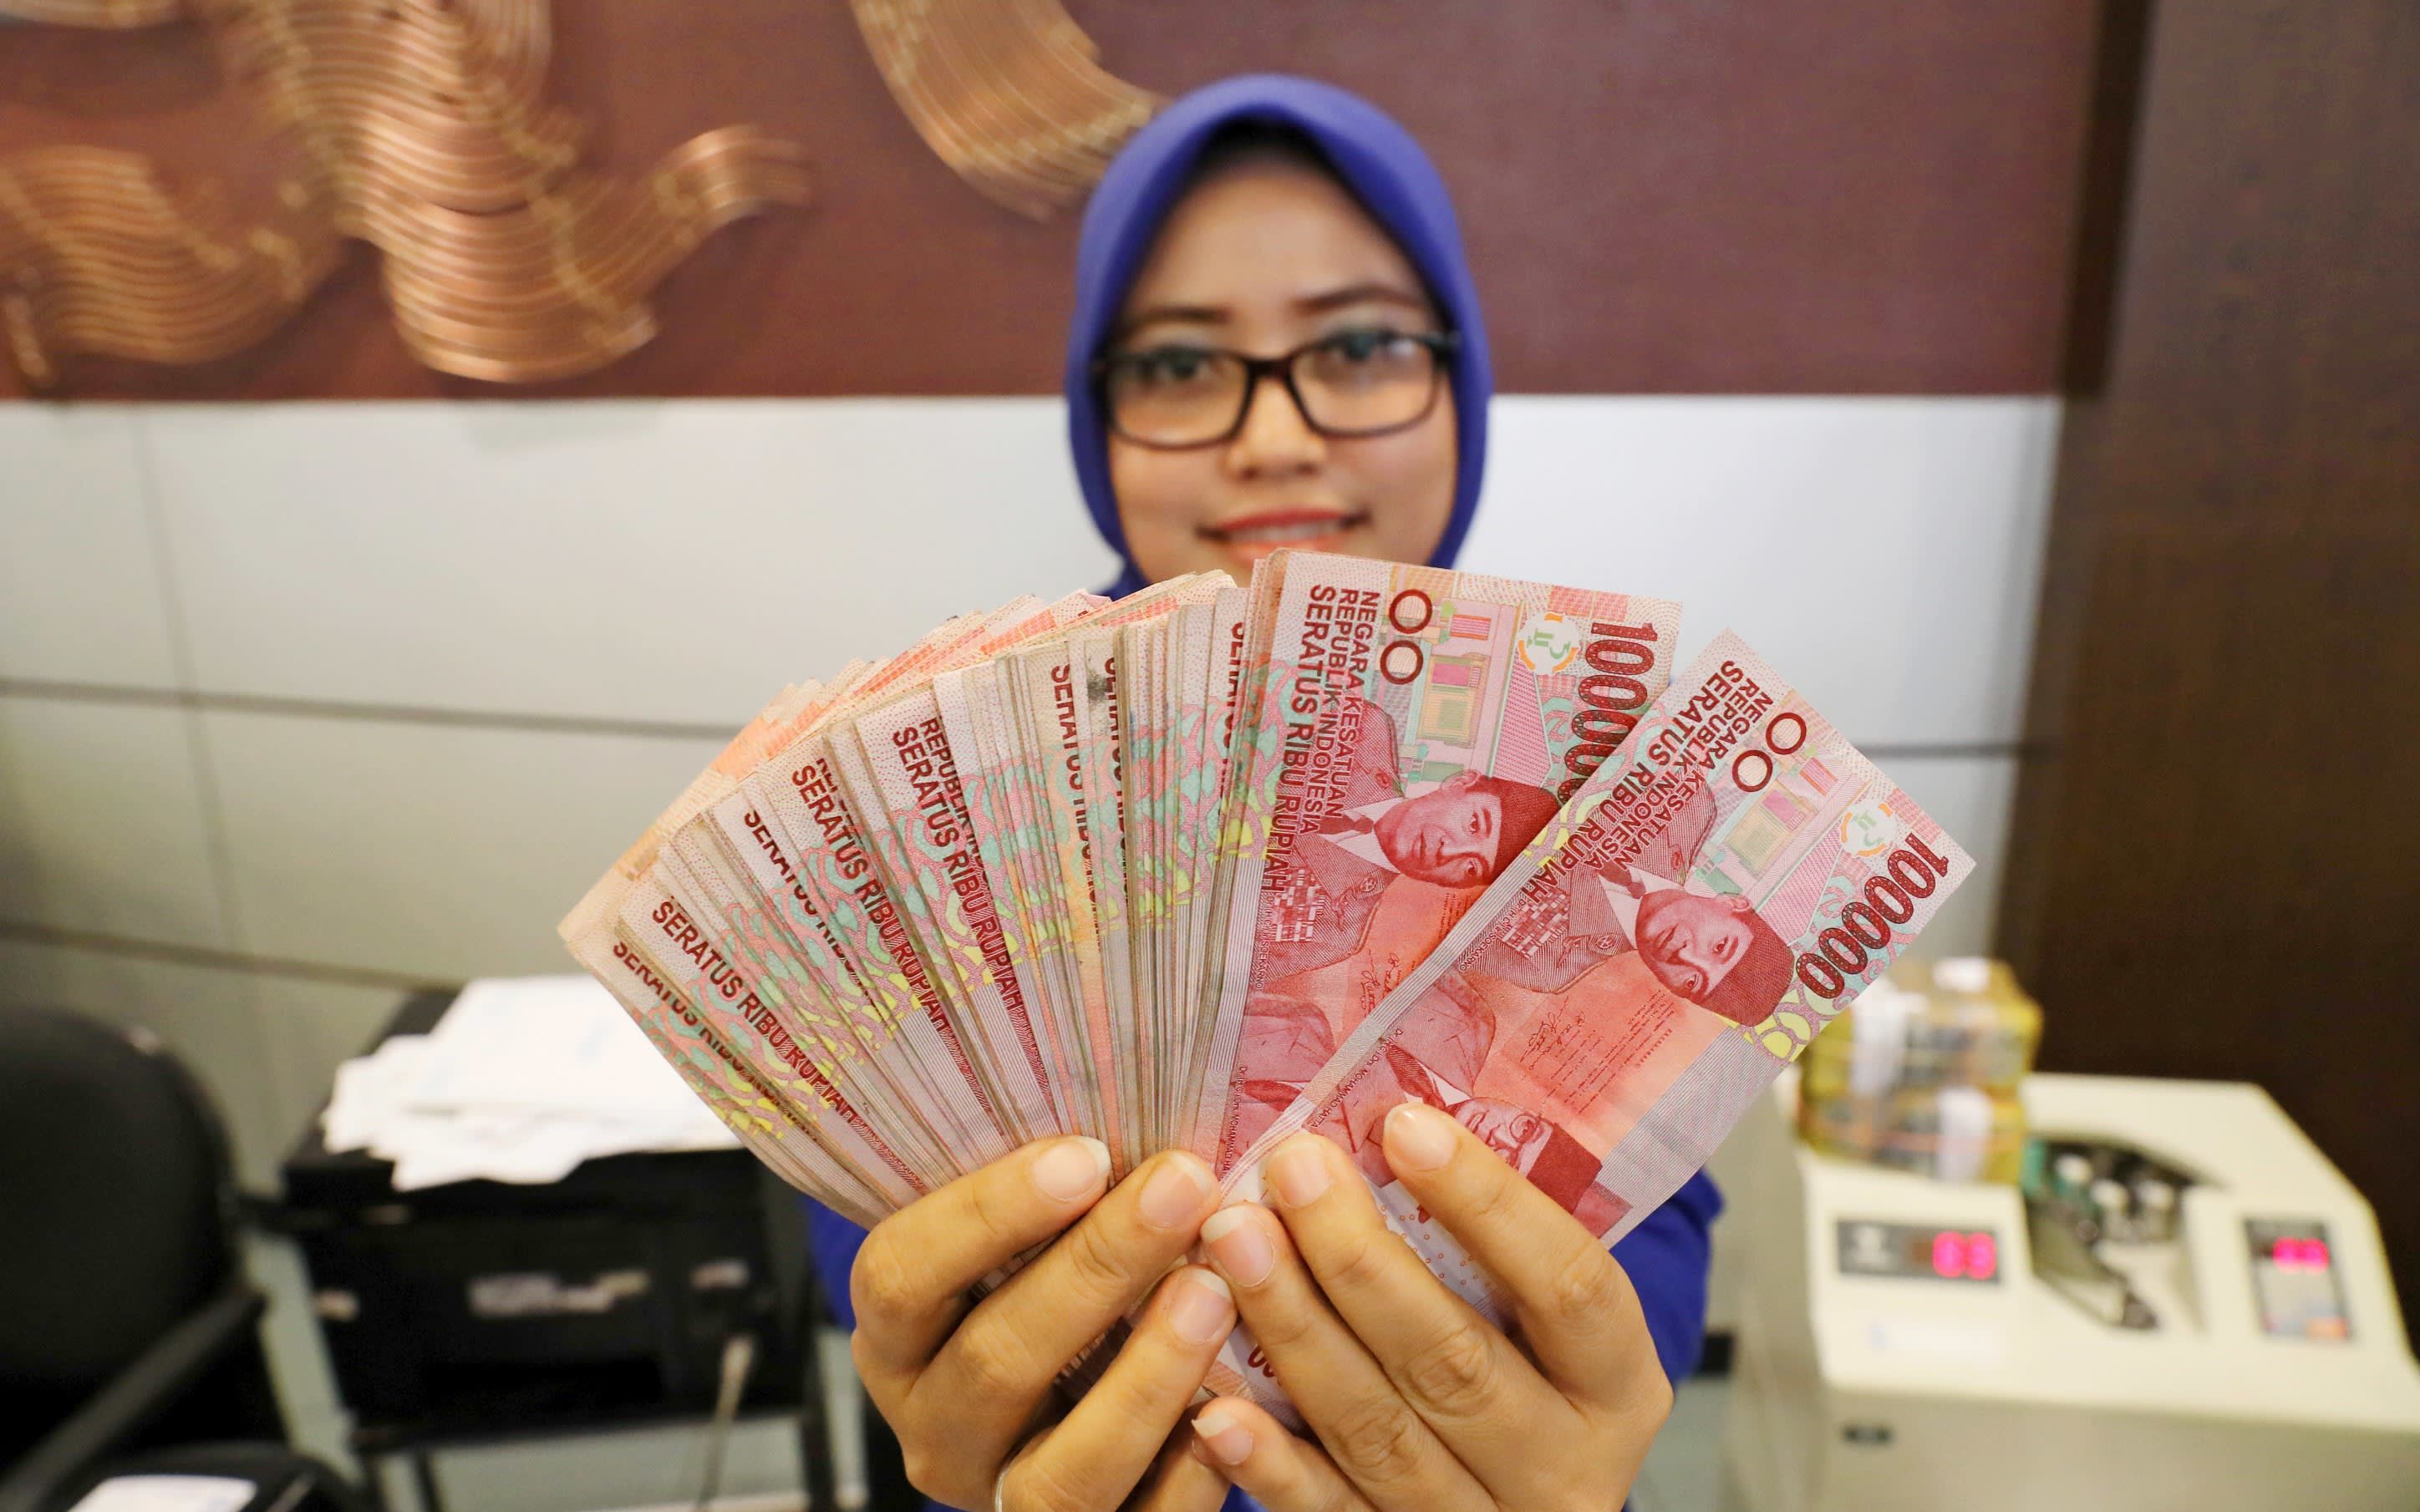 250 000 в рублях на сегодня. Девушка с деньгами. Деньги Индонезии. Индонезийка с деньгами. Индонезийские деньги в руках.